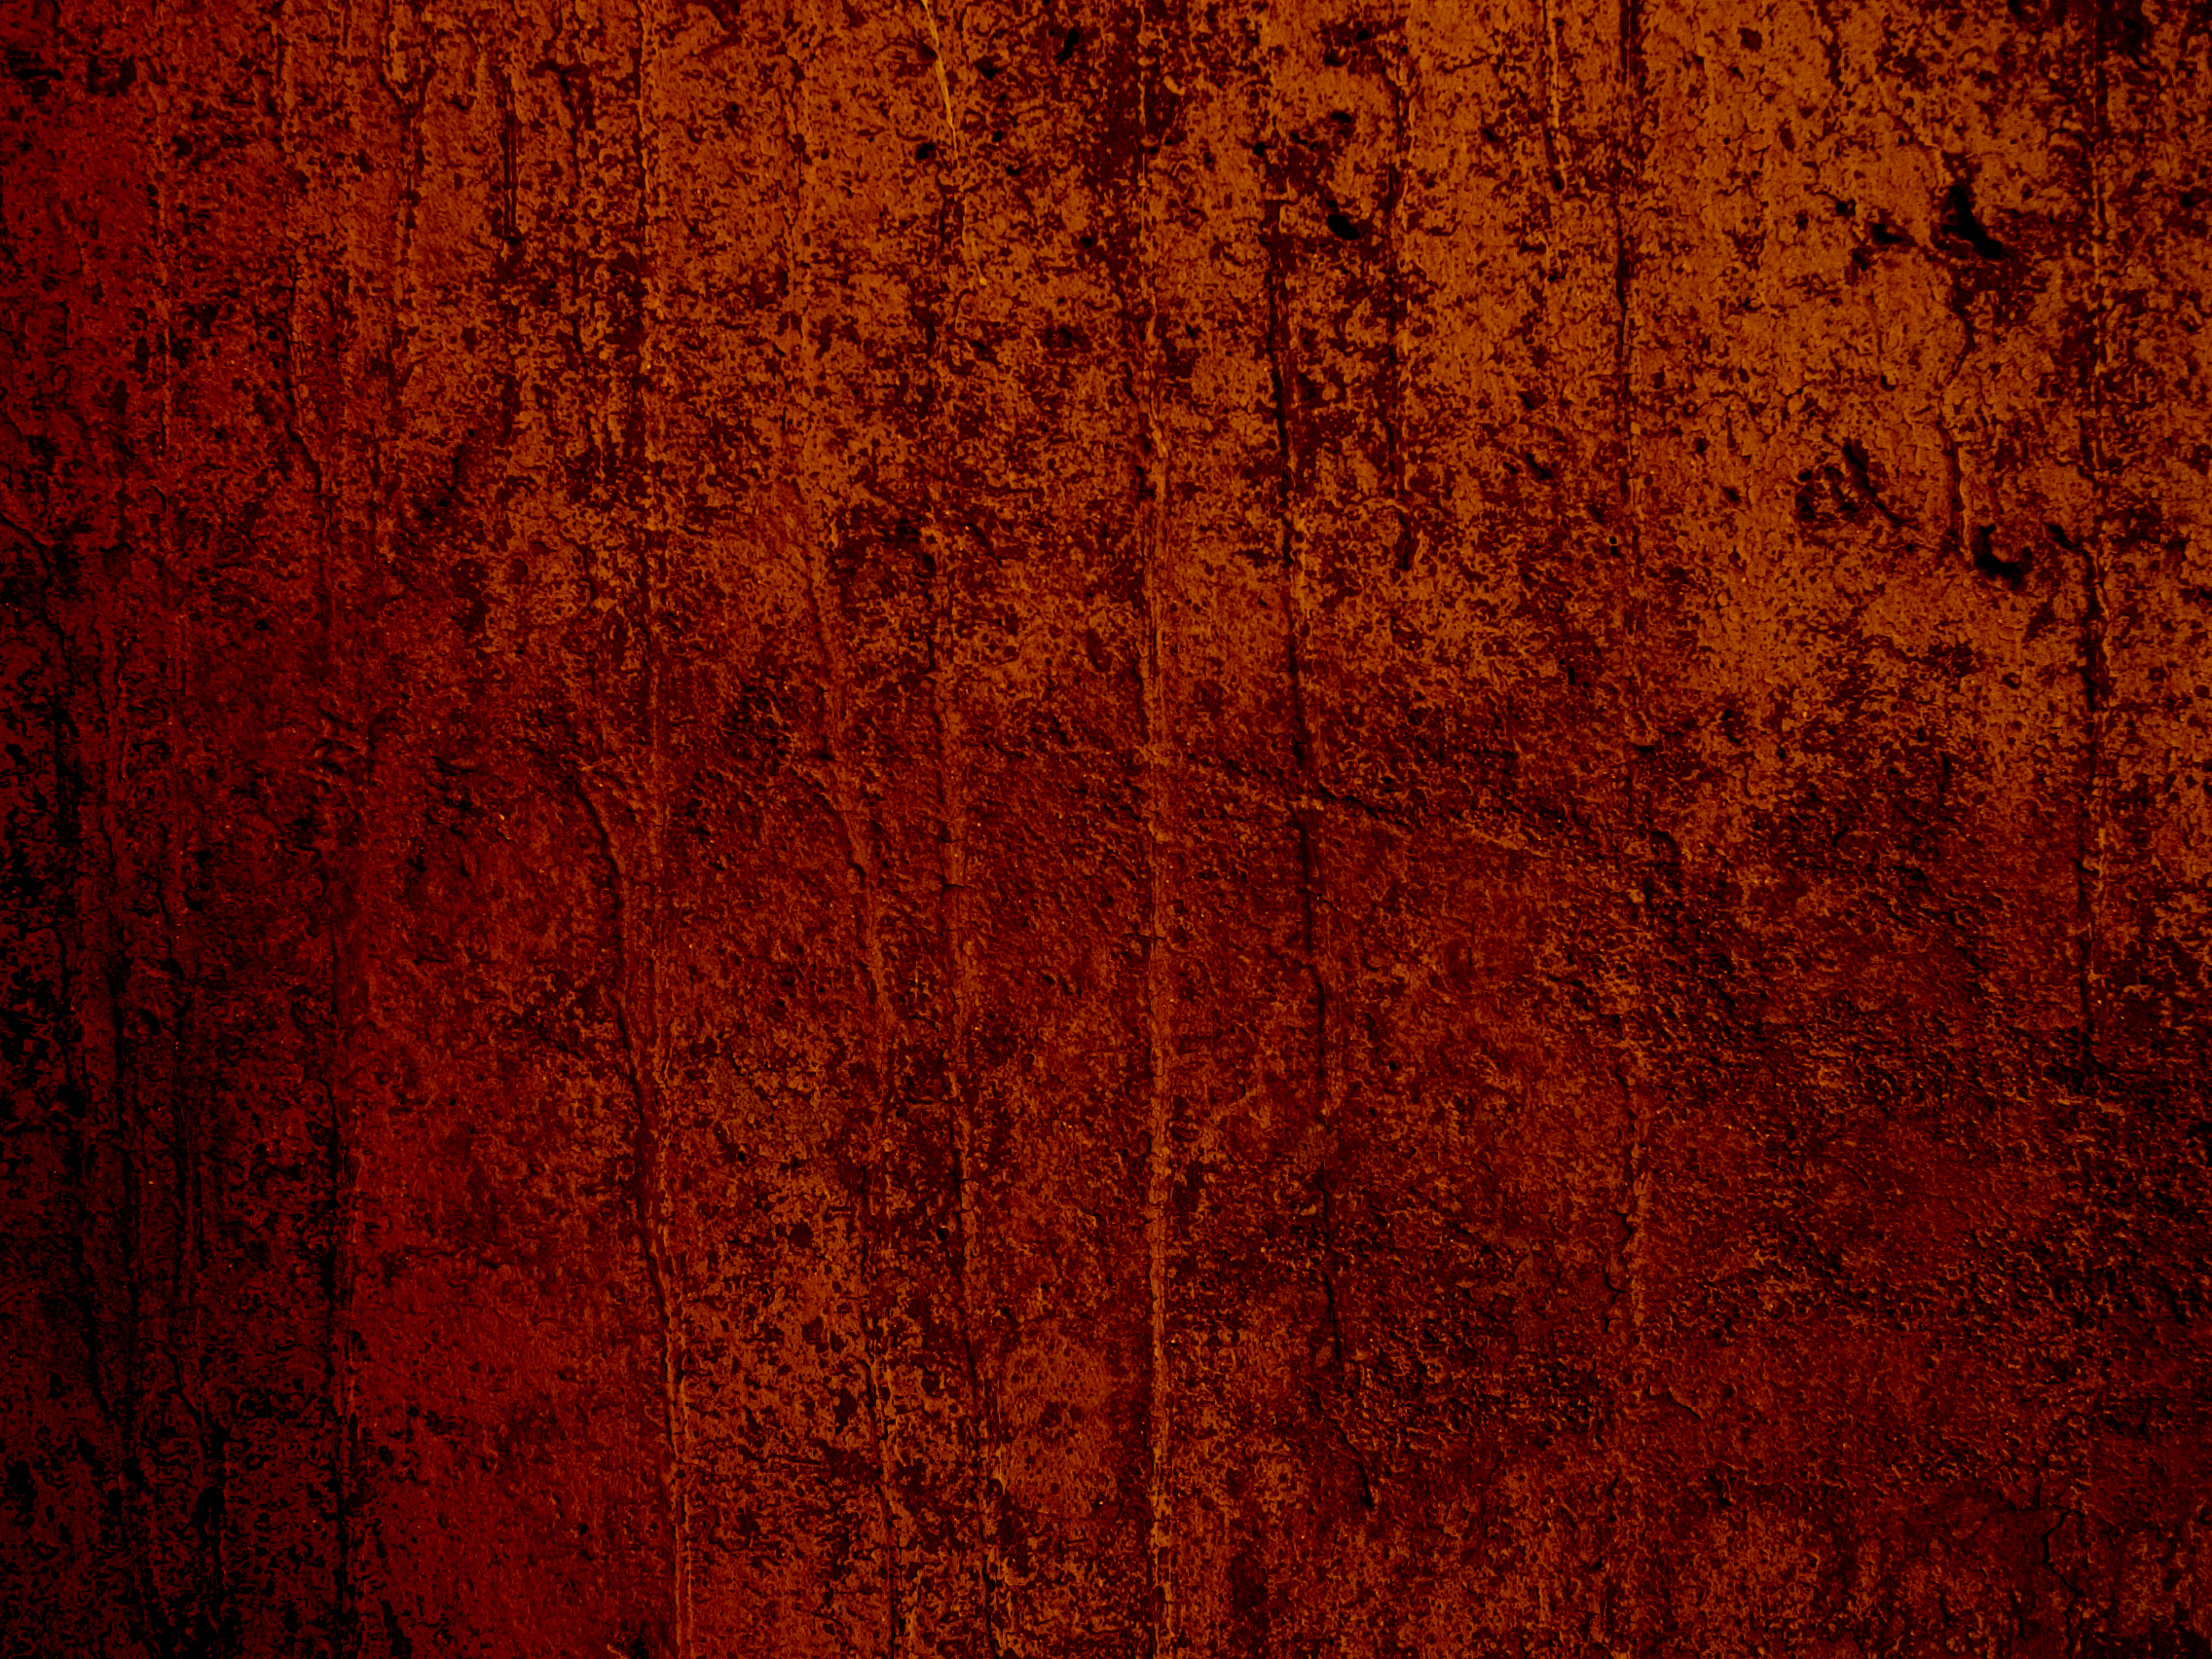 Orange Textured Background Jpg Sep